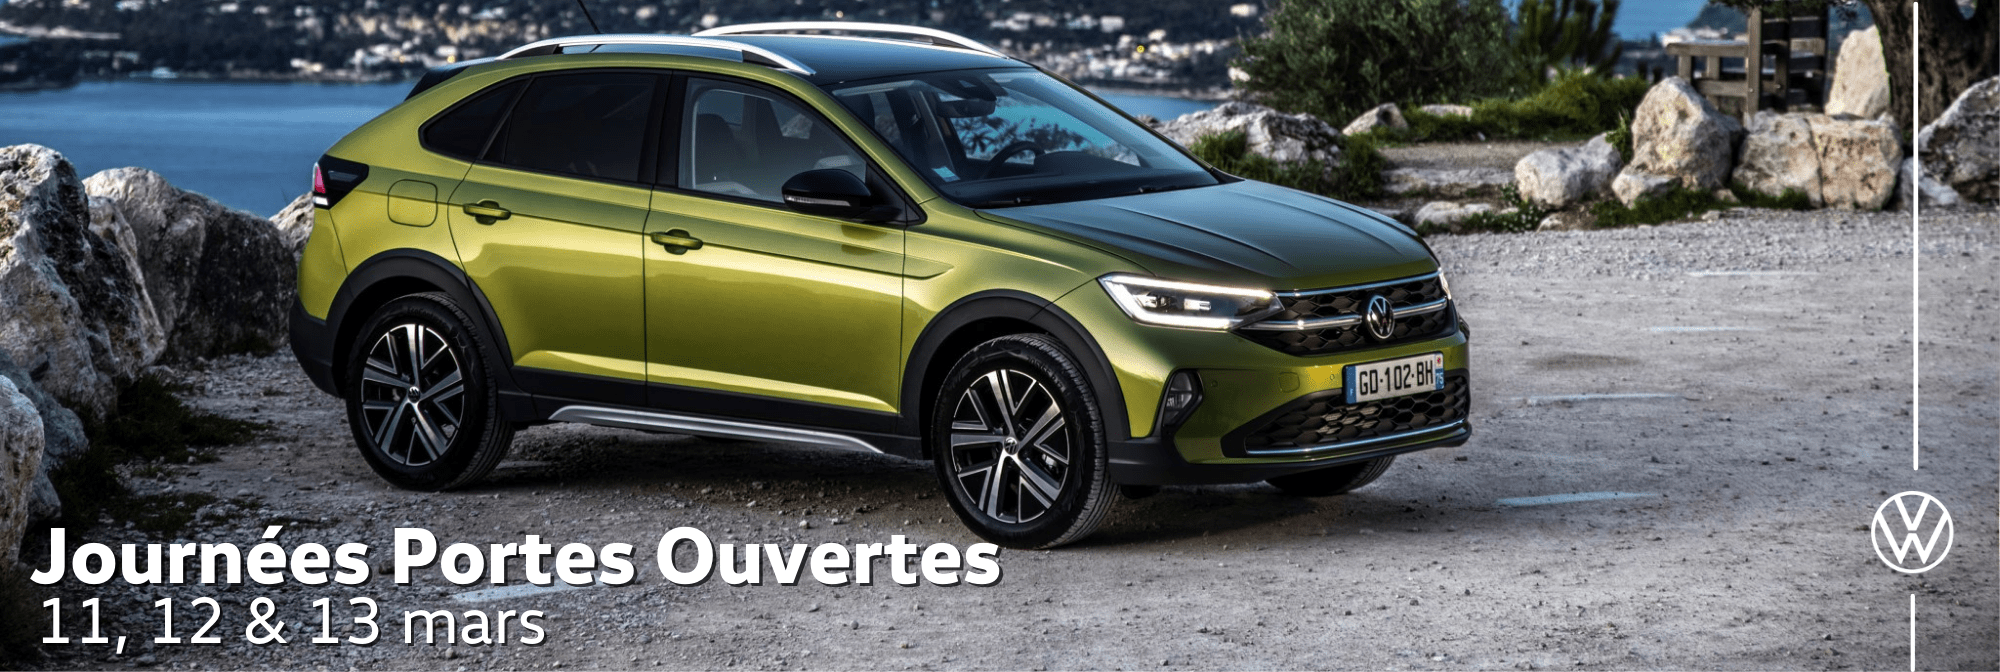 Volkswagen Villeneuve-d'Ascq AUTO-EXPO - Journées Portes Ouvertes Mars 2022